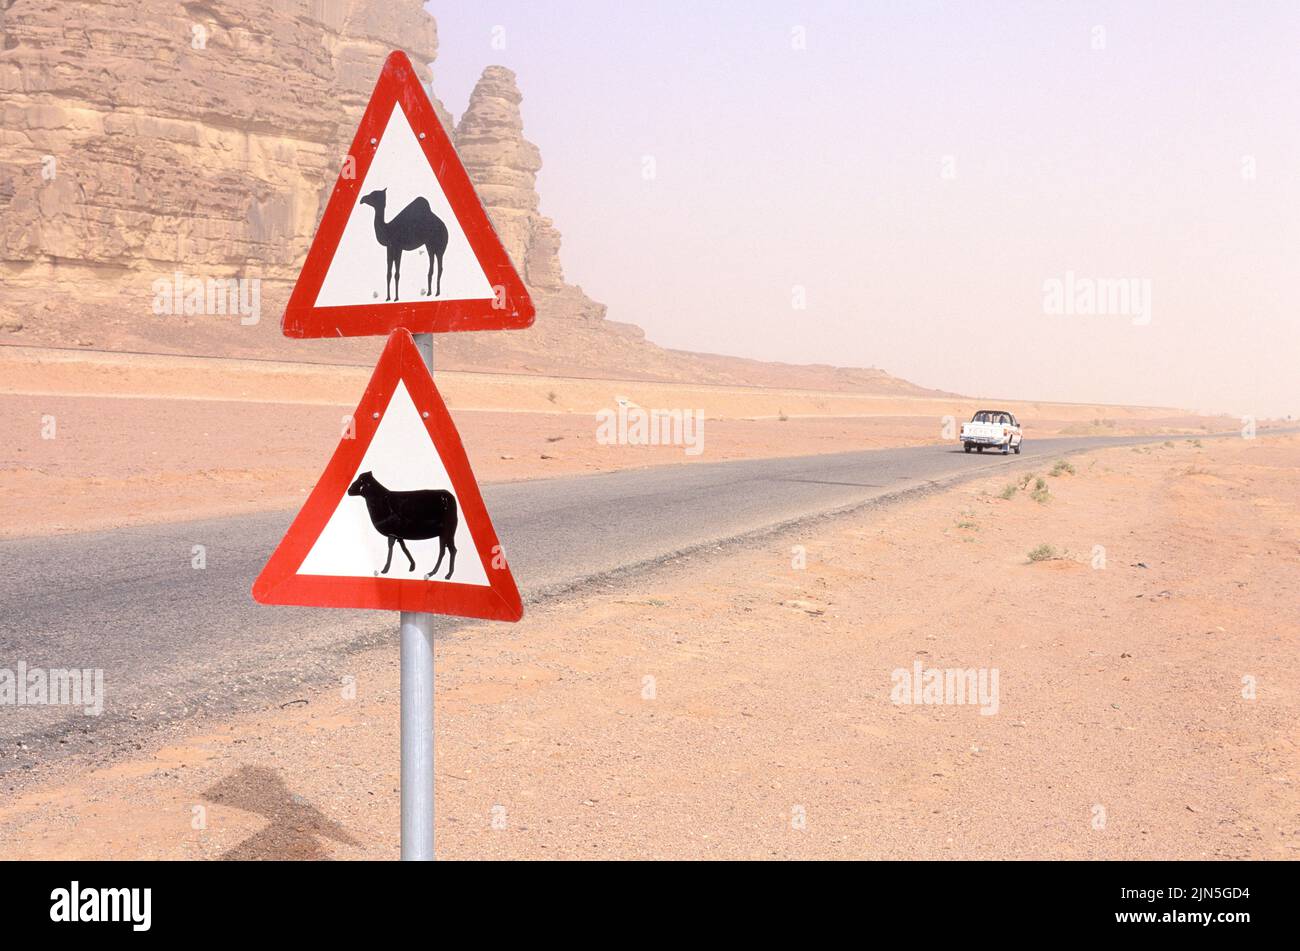 Jordan, Wadi Rum Desert, Road signs Stock Photo